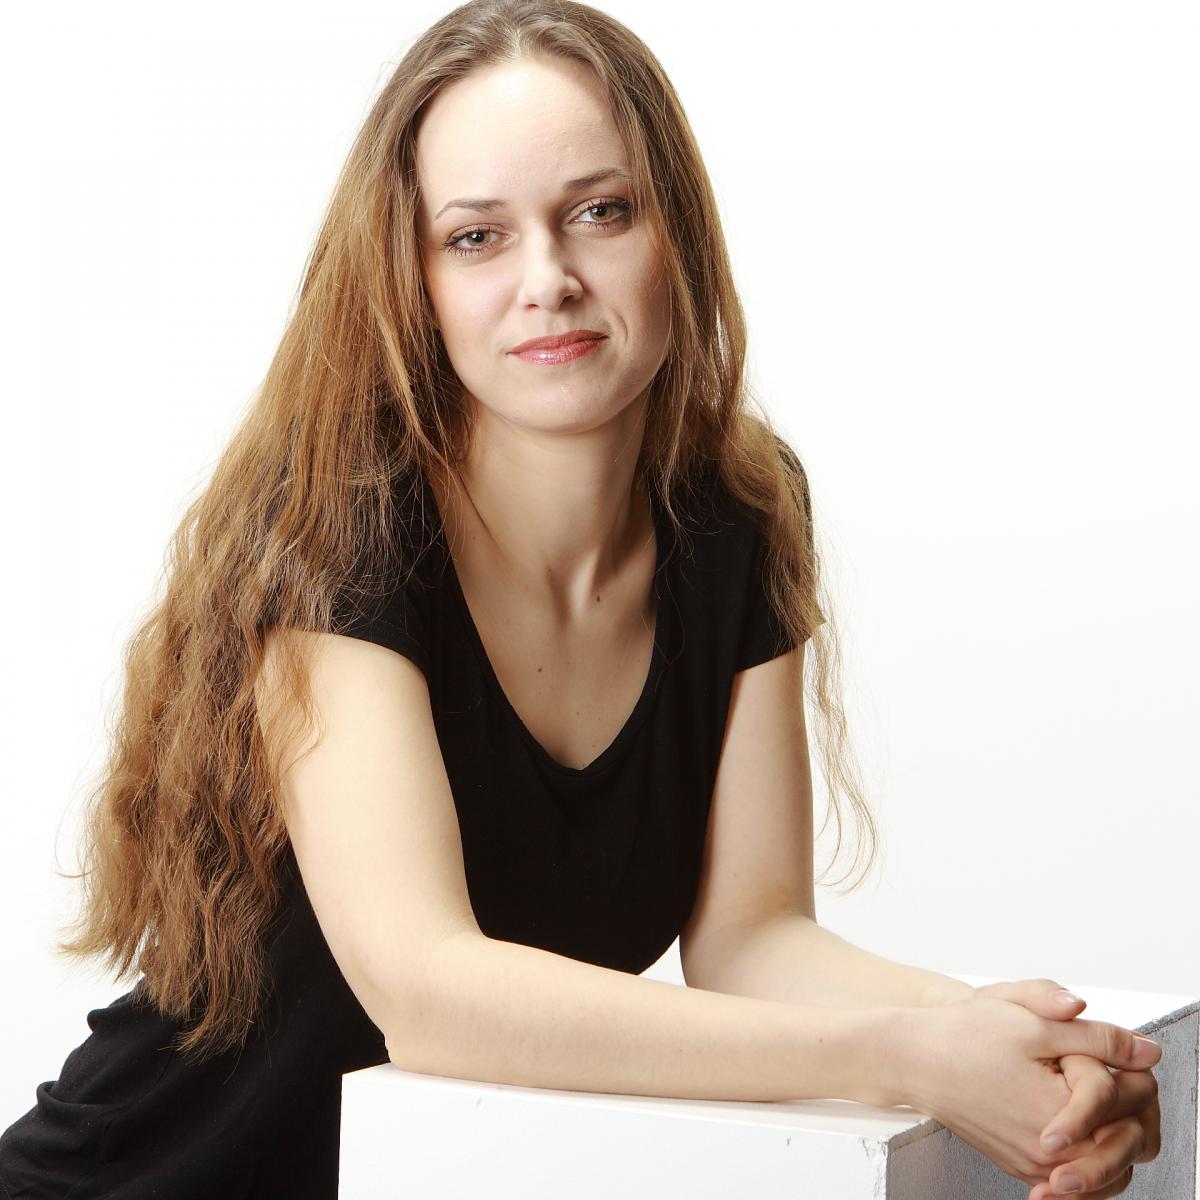 Veselina Kalcheva